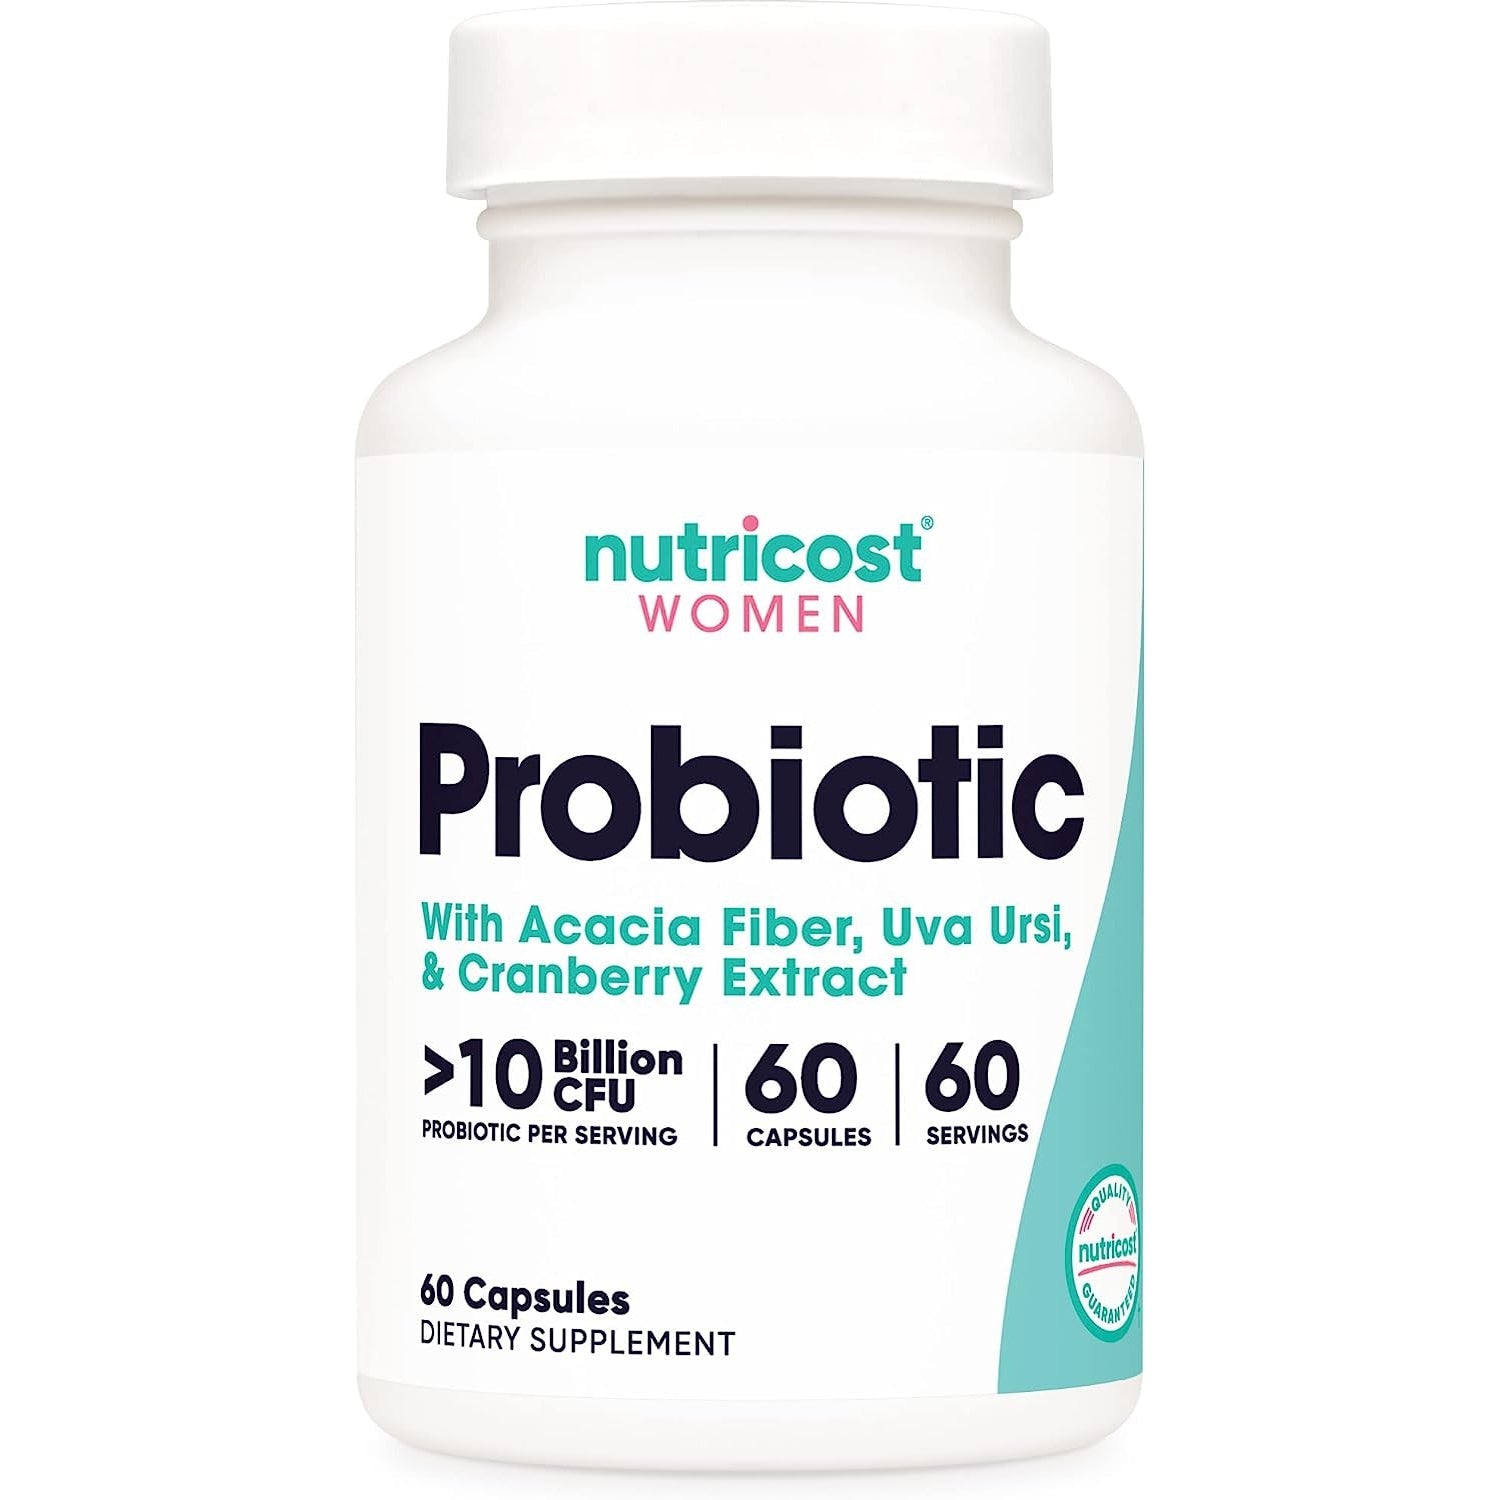 Nutricost Probiotic Complex for Women 10 Billion CFU with Acacia Fiber, Uva Ursi, & Cranberry Extract 60 Capsules Non-GMO & Gluten Free